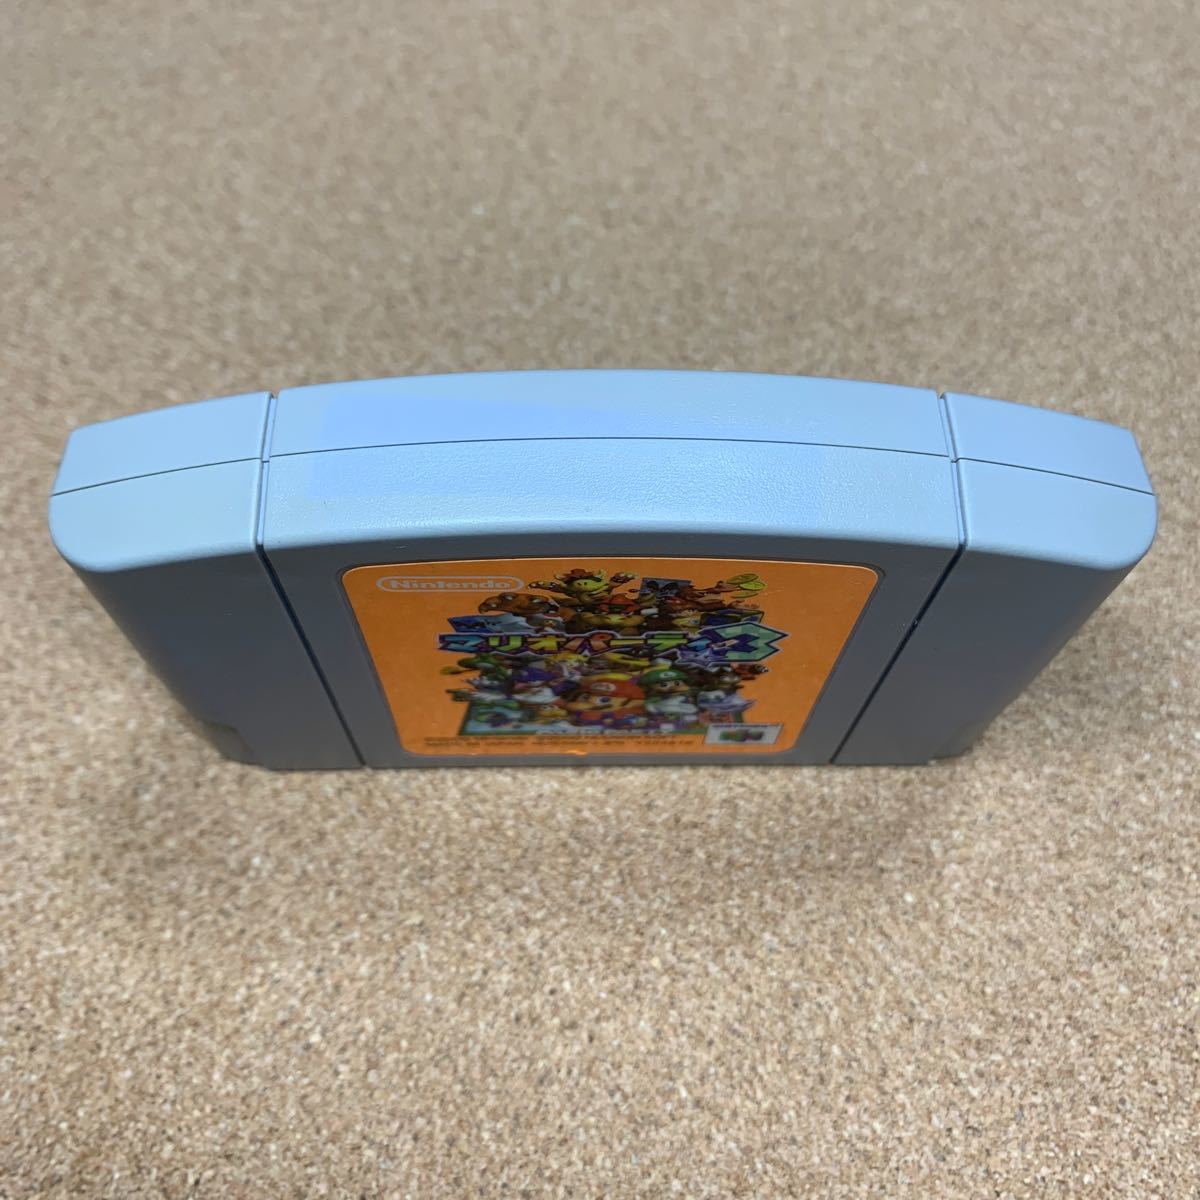 動作確認済み ニンテンドー64 マリオパーティ3  任天堂Nintendoソフト ゲーム レトロ 